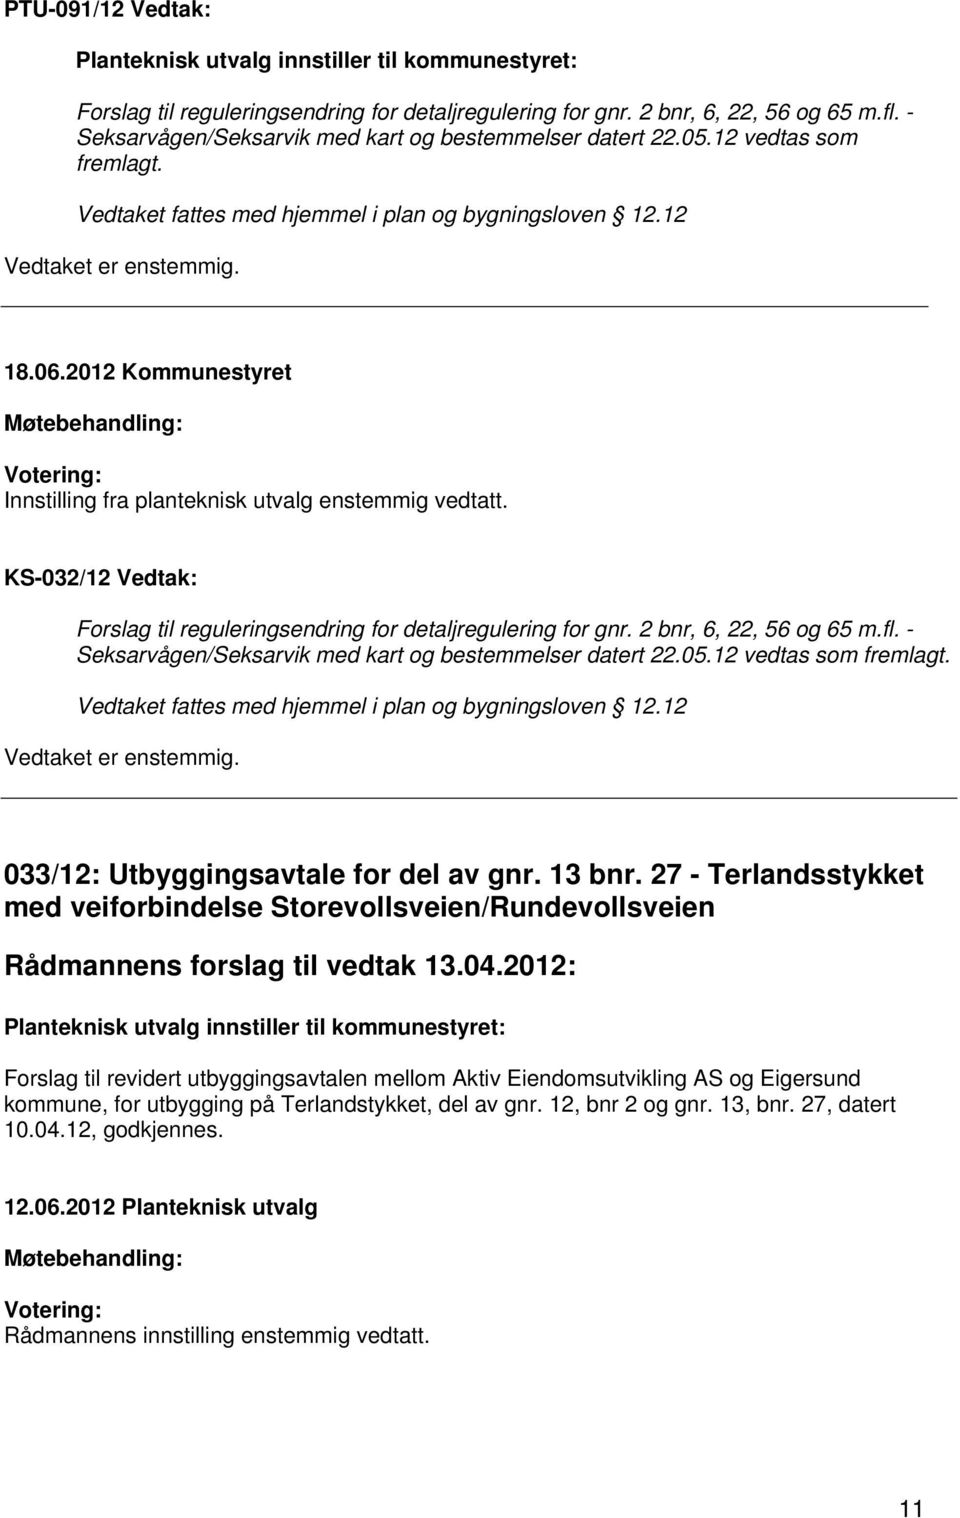 KS-032/12 Vedtak: Forslag til reguleringsendring for detaljregulering for gnr. 2 bnr, 6, 22, 56 og 65 m.fl. - Seksarvågen/Seksarvik med kart og bestemmelser datert 22.05.12 vedtas som fremlagt.